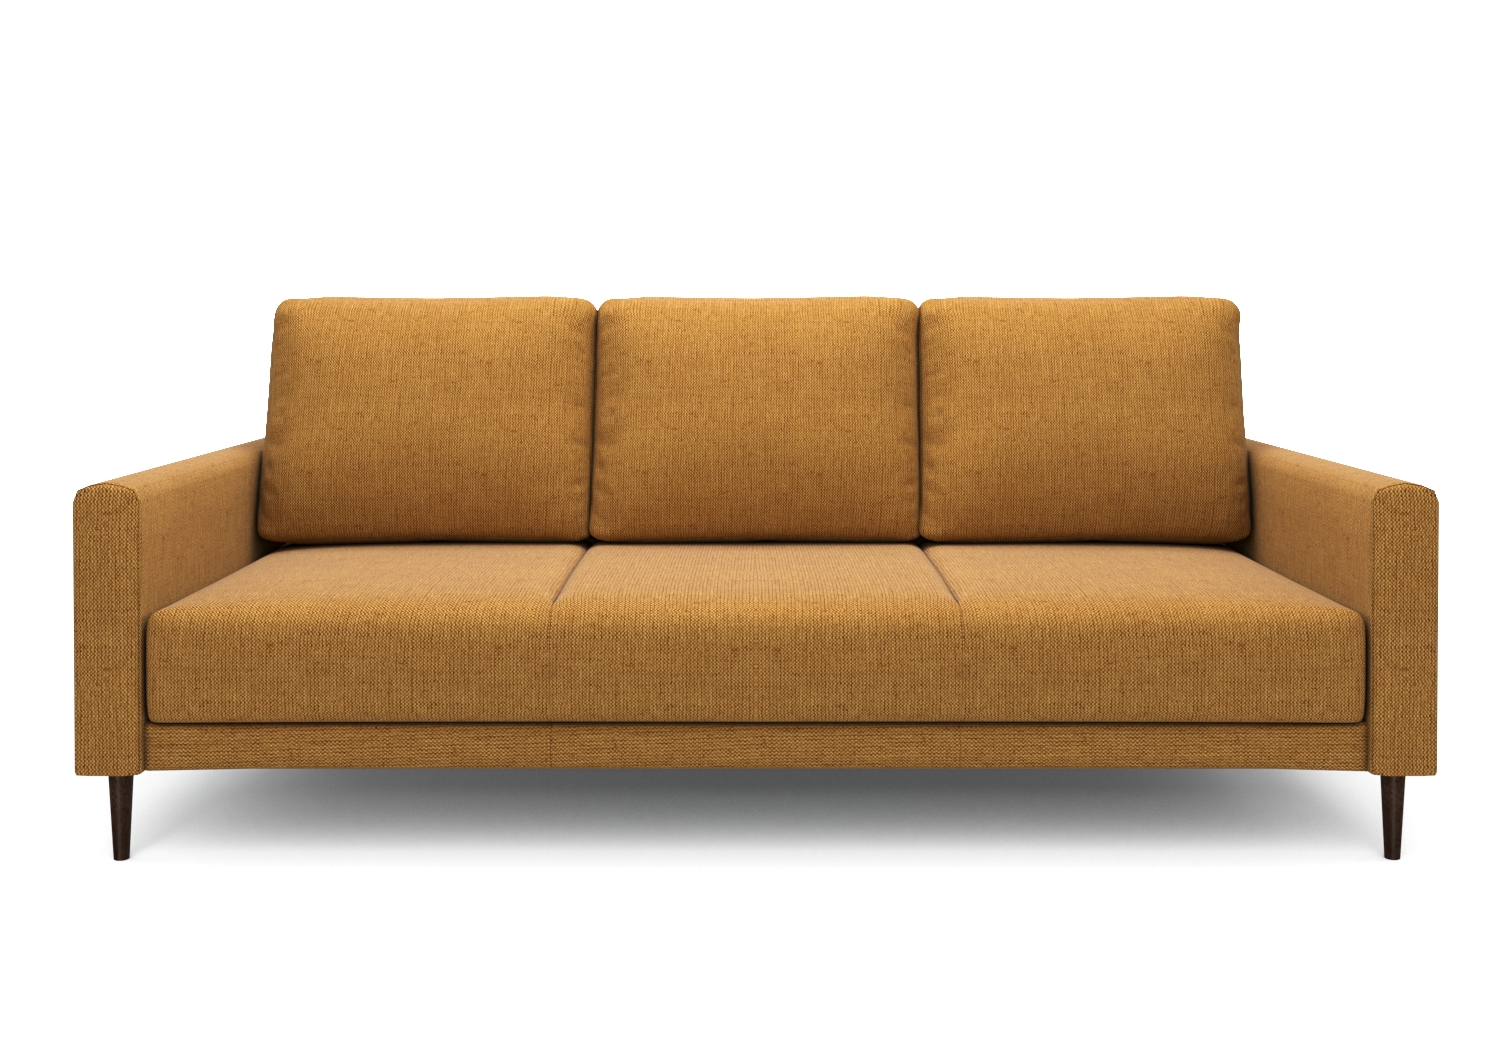 Ричи, прямой диван, Mys 560 ткань Рогожка цвет Желтый механизм трансформации Пантограф изображение 2